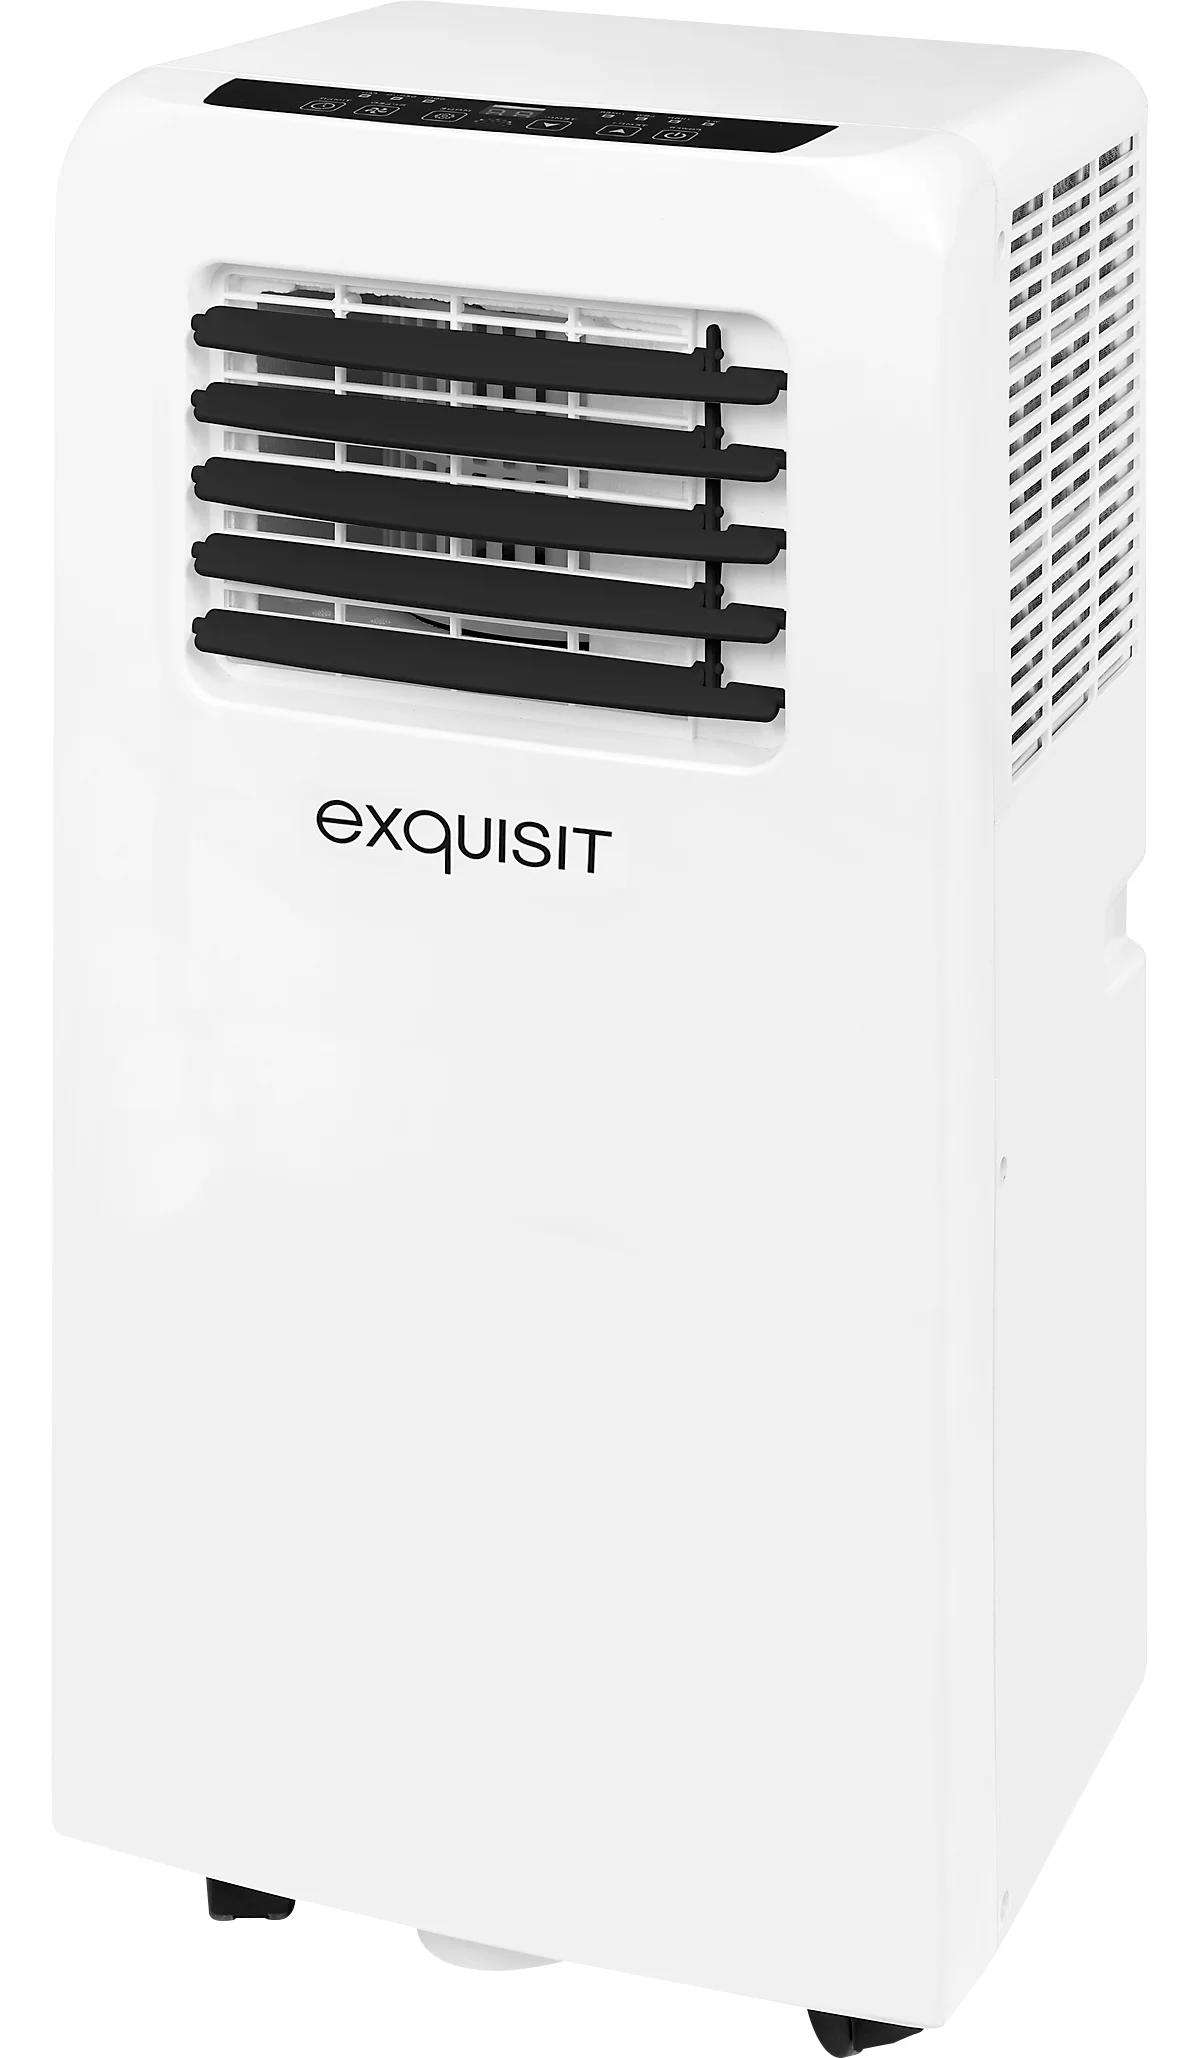 Mobiles Klimagerät Exquisit CM 30752 we, 3 in 1, bis 2,1 kW Kühlleistung, max. 320 m³/h, bis 20 m²